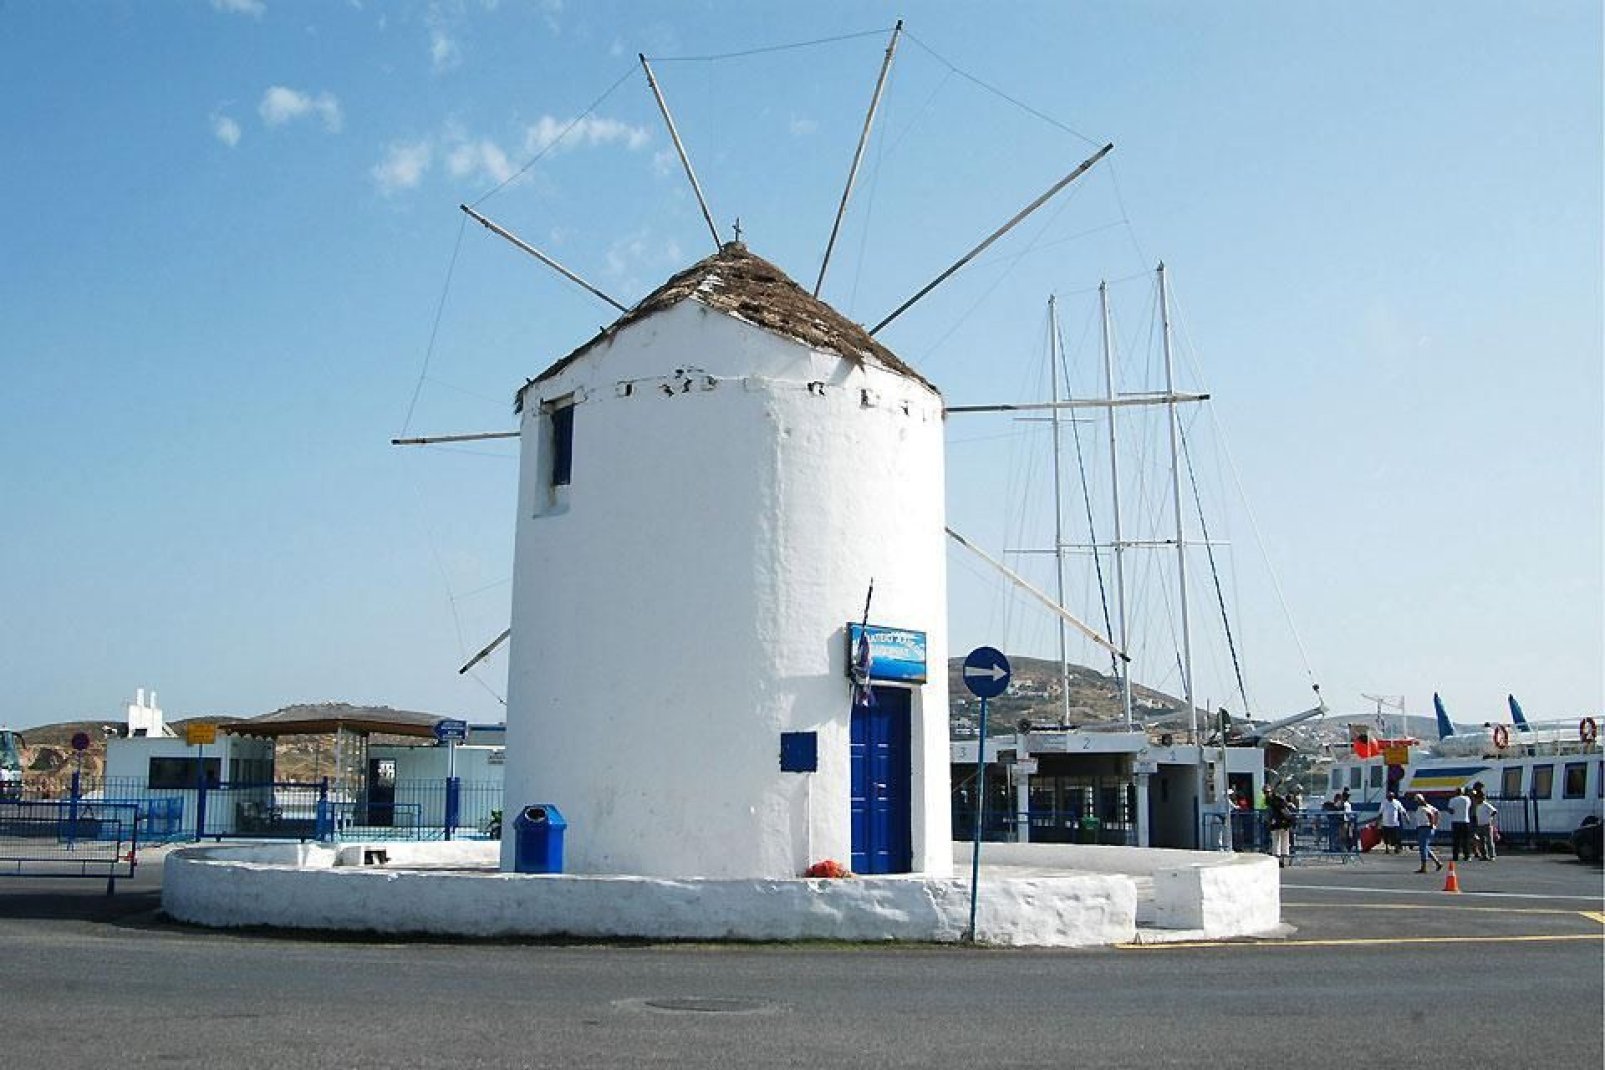 Comme toutes les îles de la région, Paros possède ses fameux moulins, typiques de la région des Cyclades.